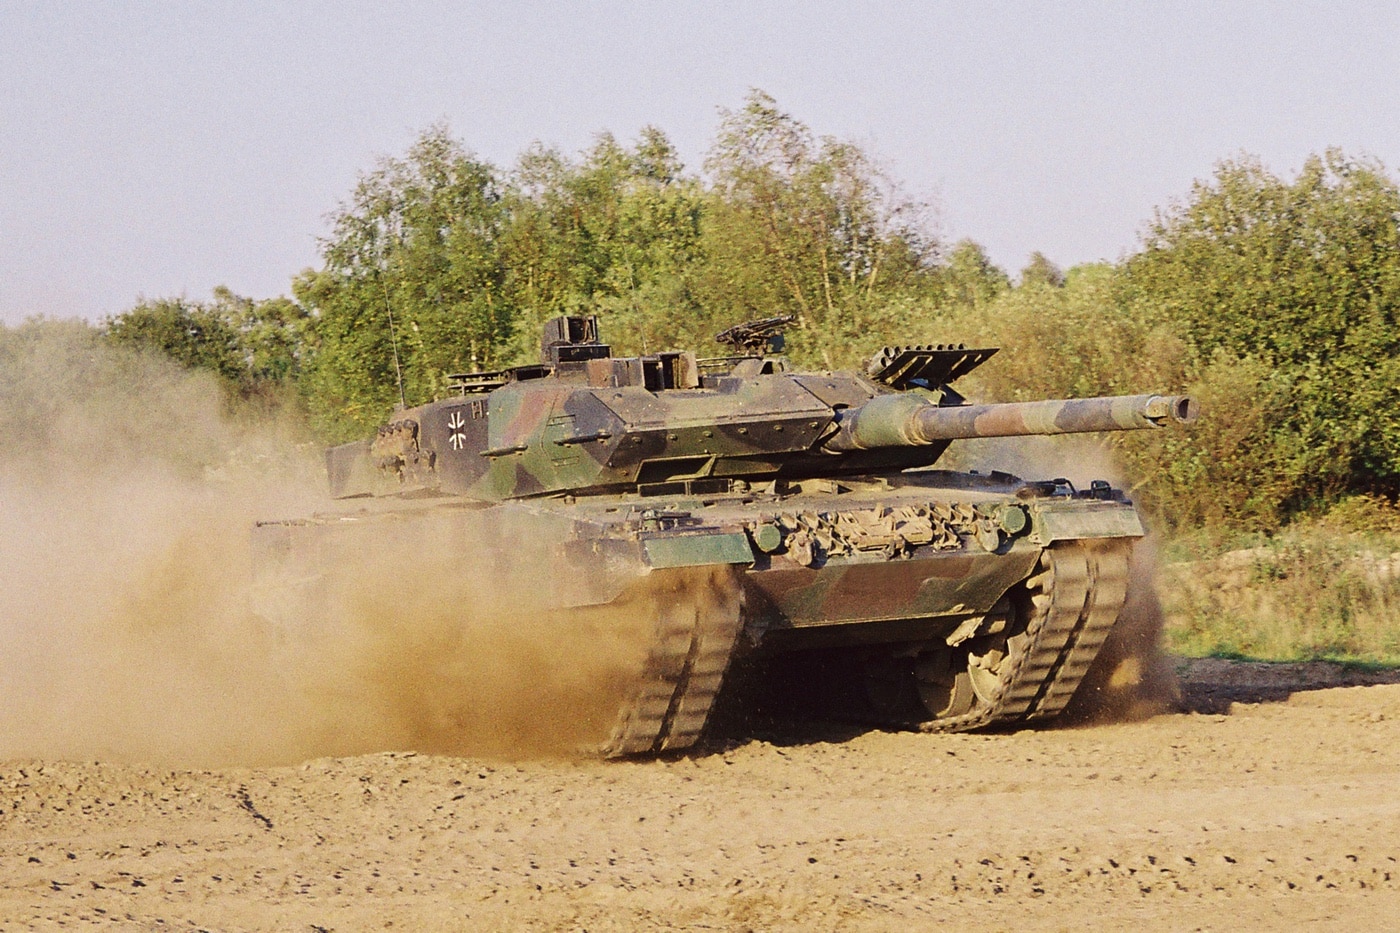 Leopard 2A5 tank